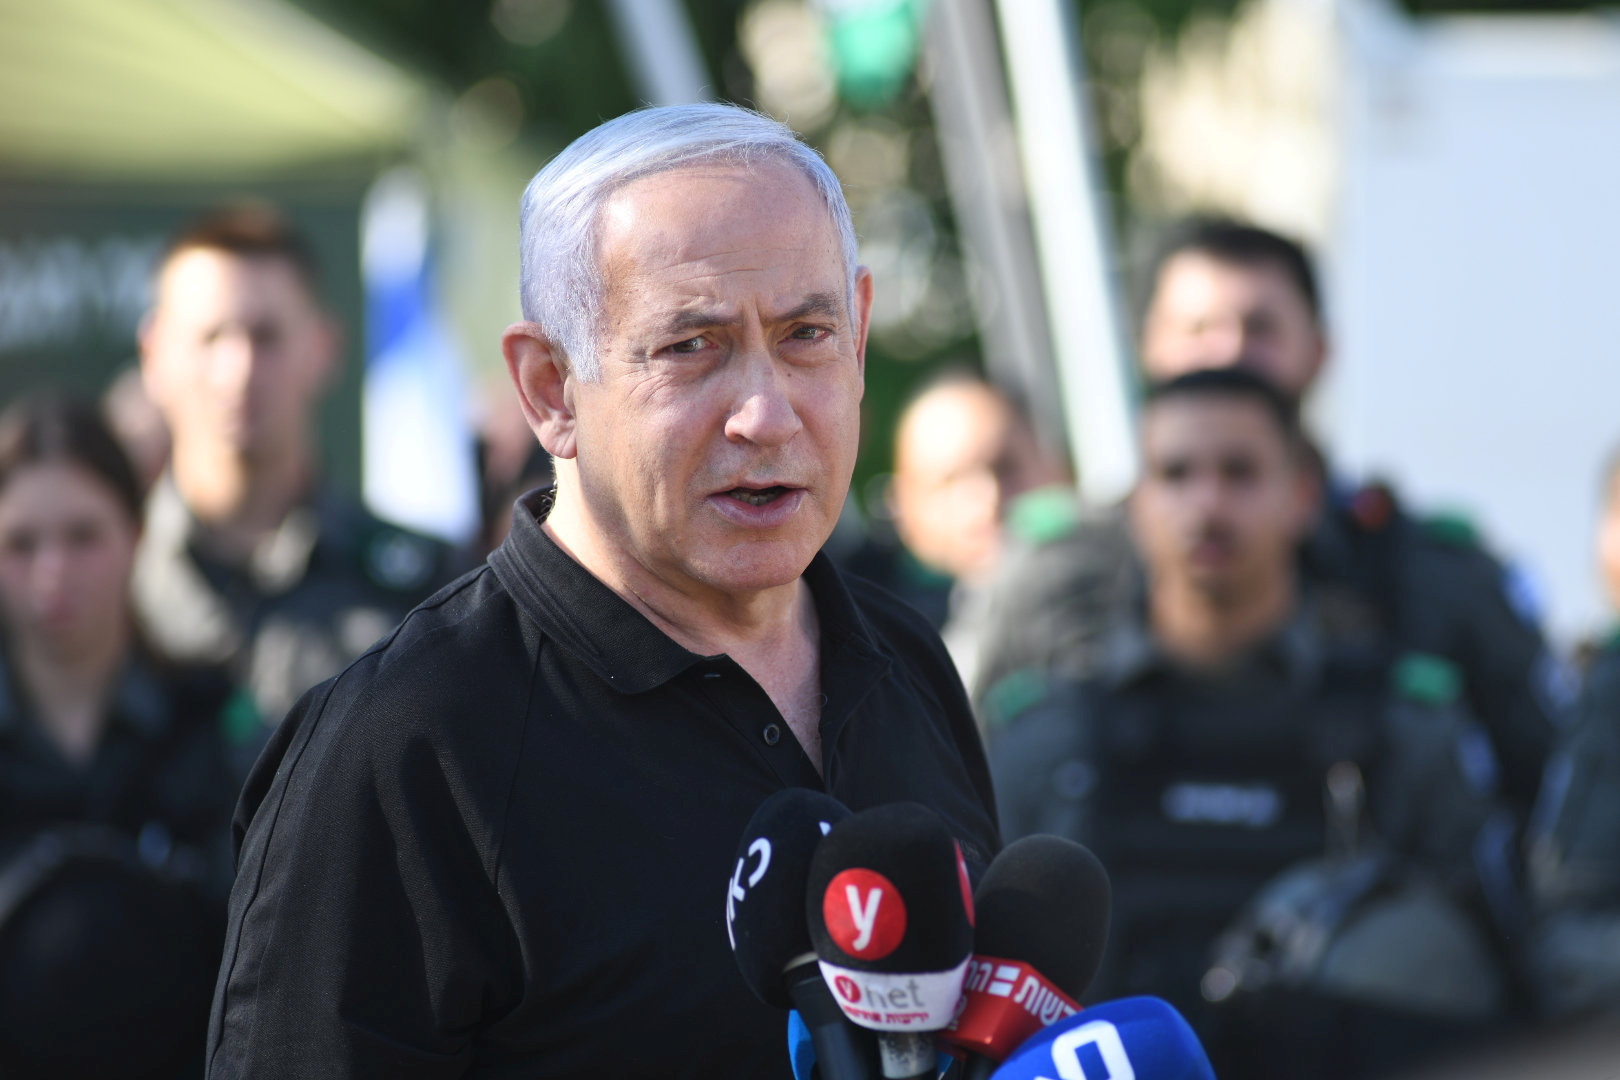 Le gouvernement israélien lance « une offensive diplomatique » contre l'Iran dans l'attente d'une possible « riposte »